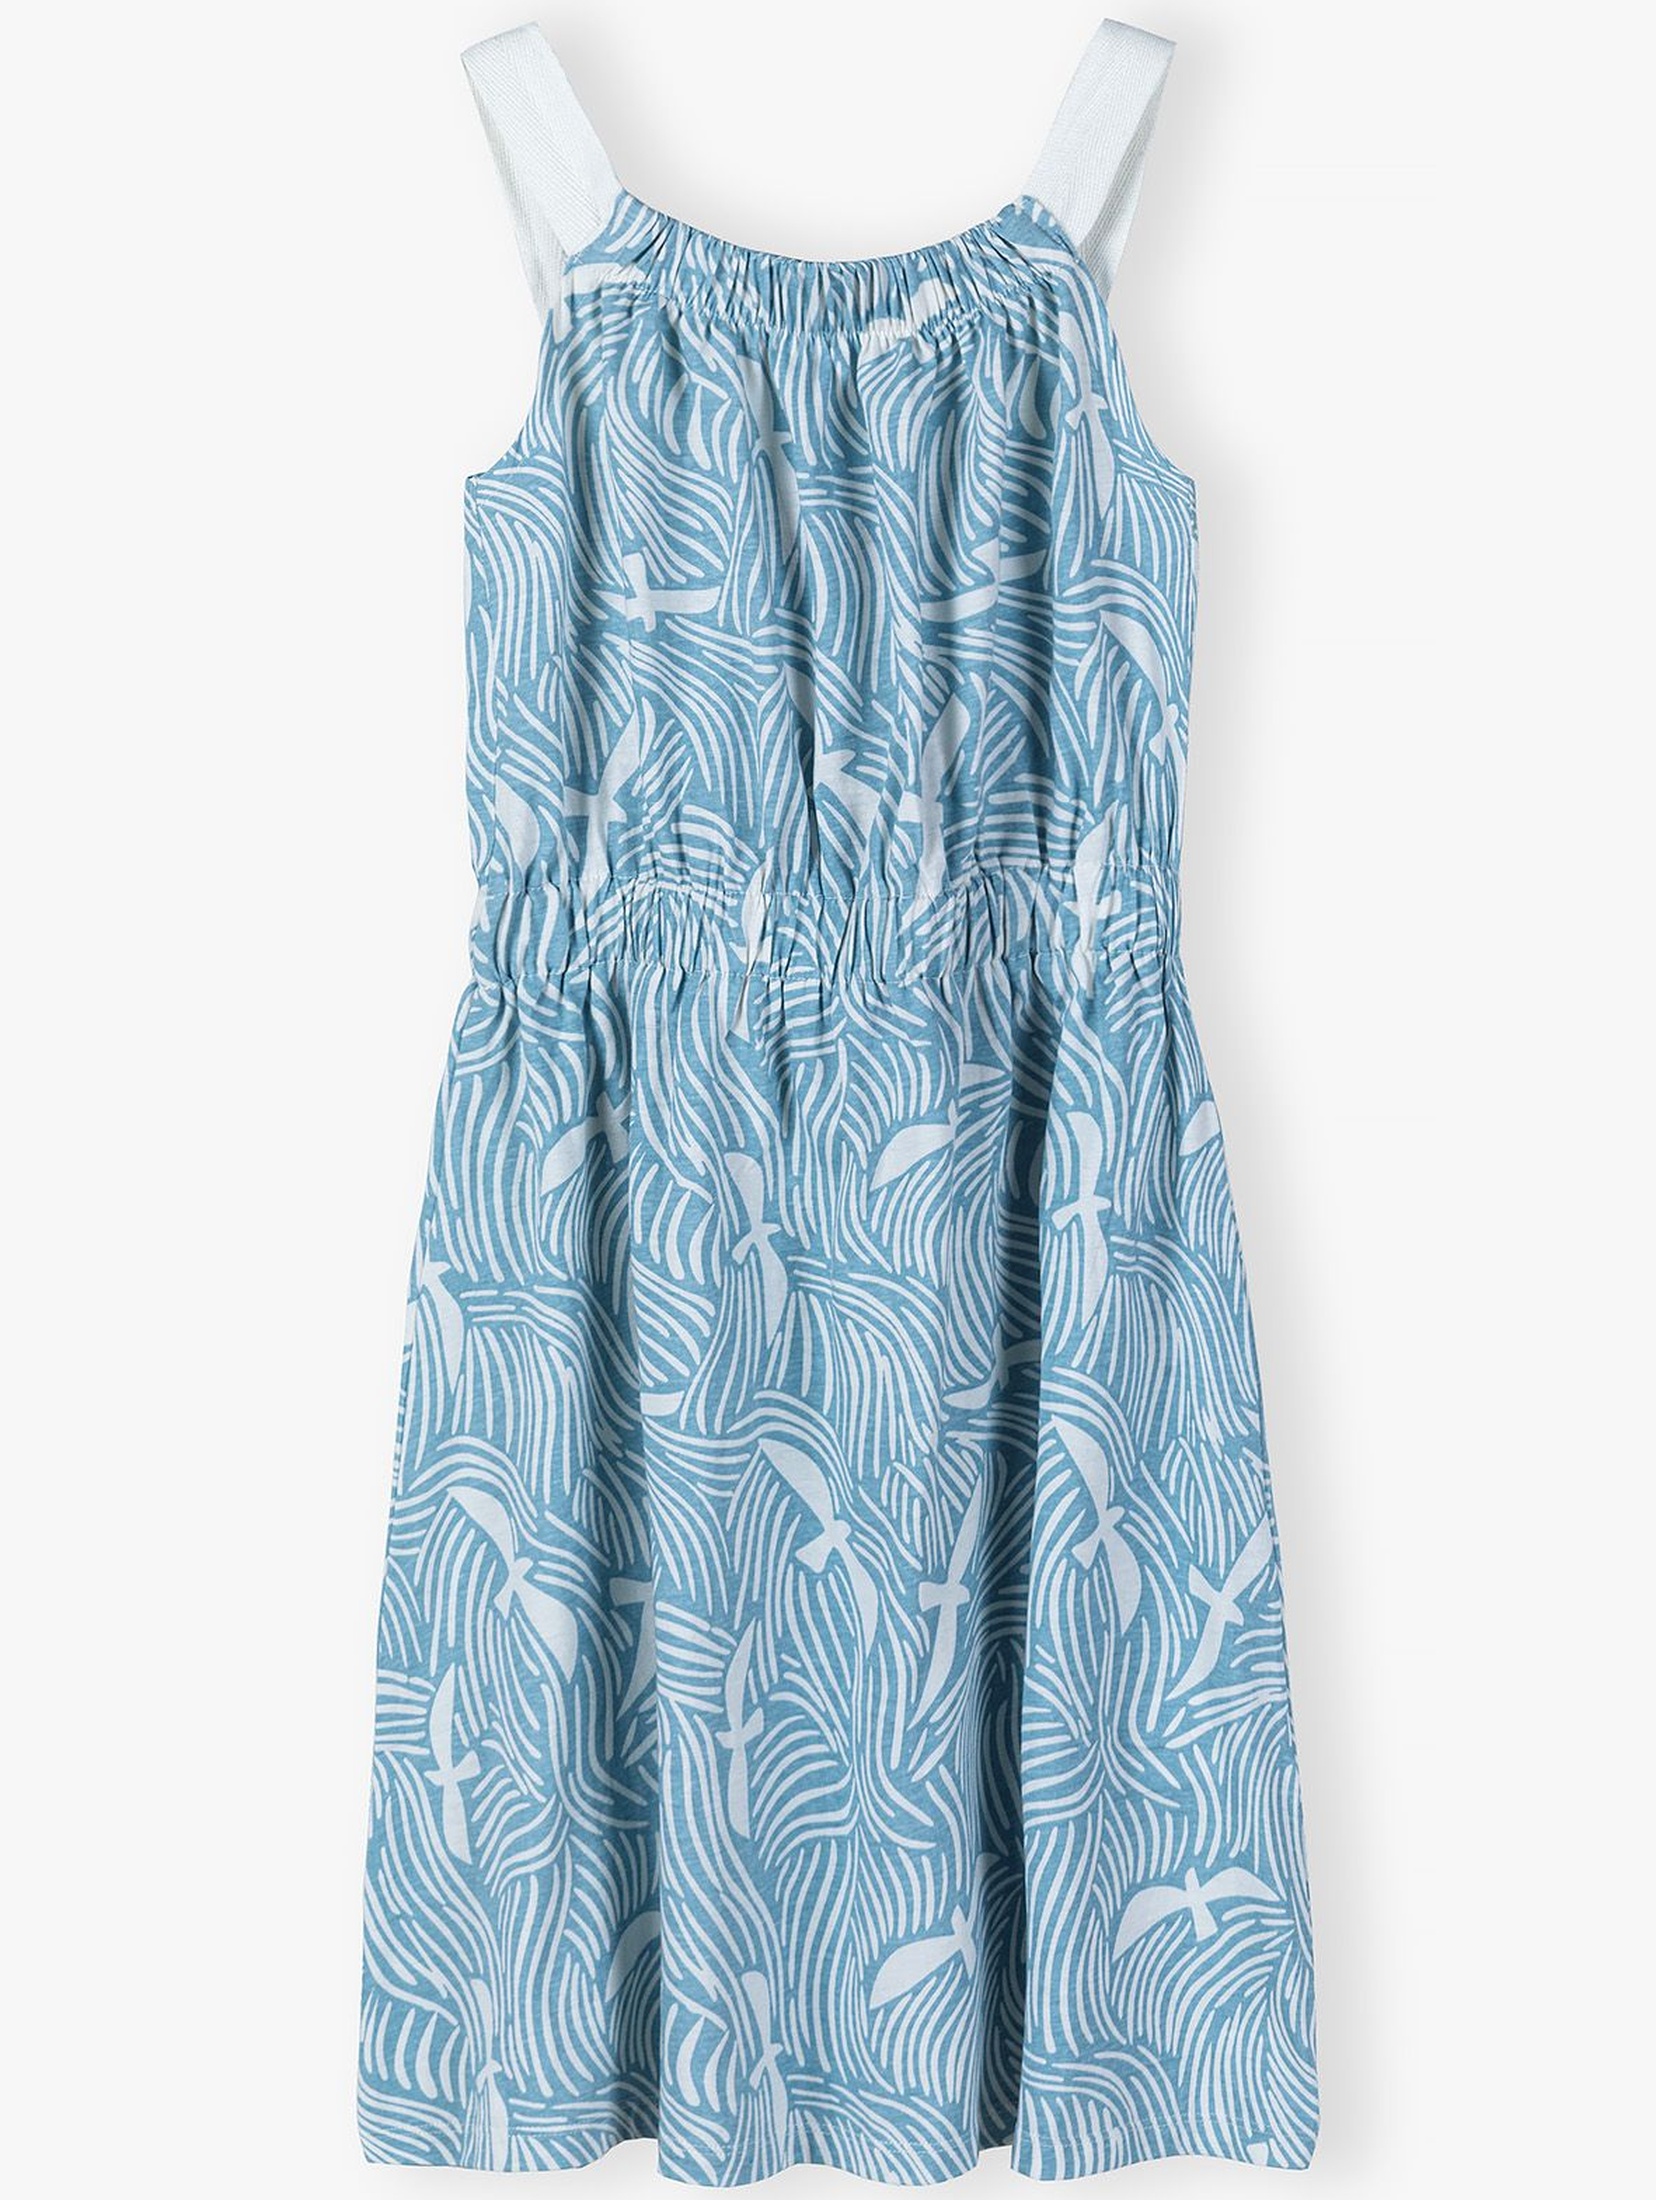 Bawełniana sukienka dla dziewczynki na lato - niebieska